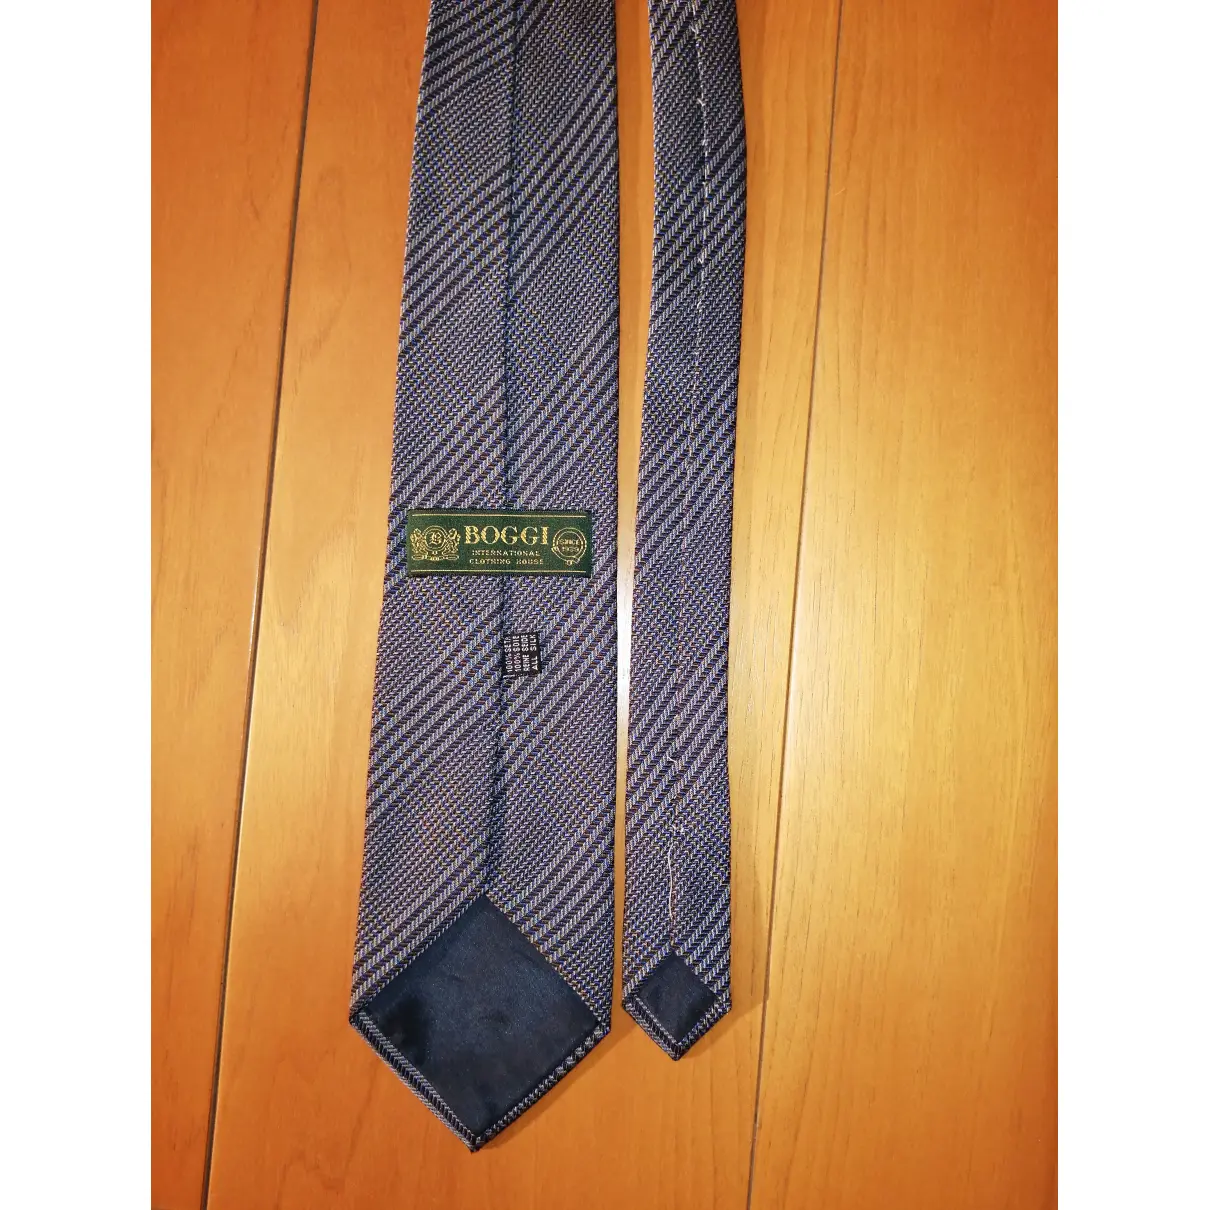 Buy Boggi Silk tie online